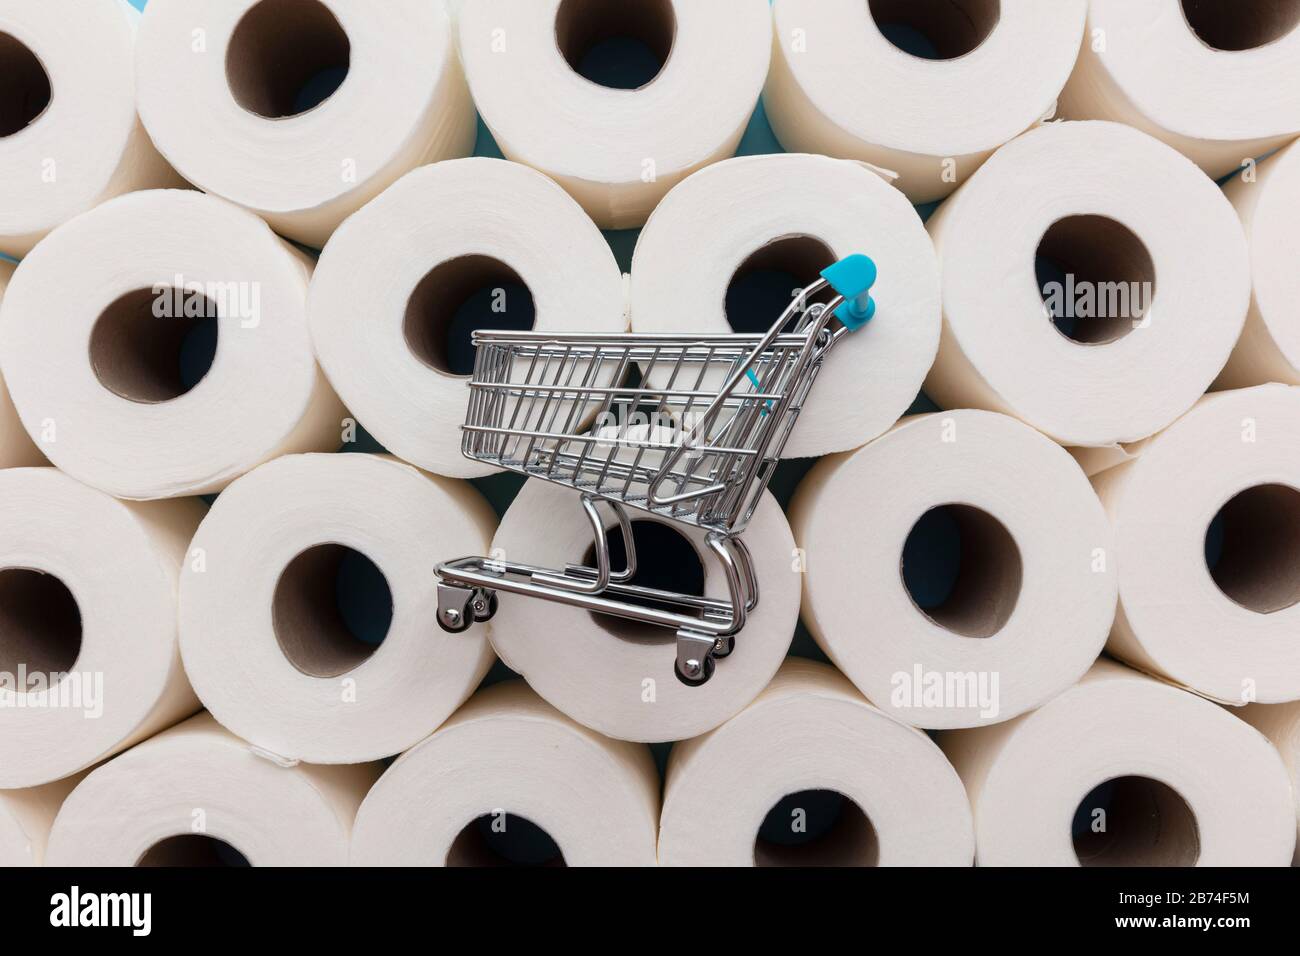 Supermarché shopping trollly sur un arrière-plan des rouleaux de papier de toilette Banque D'Images